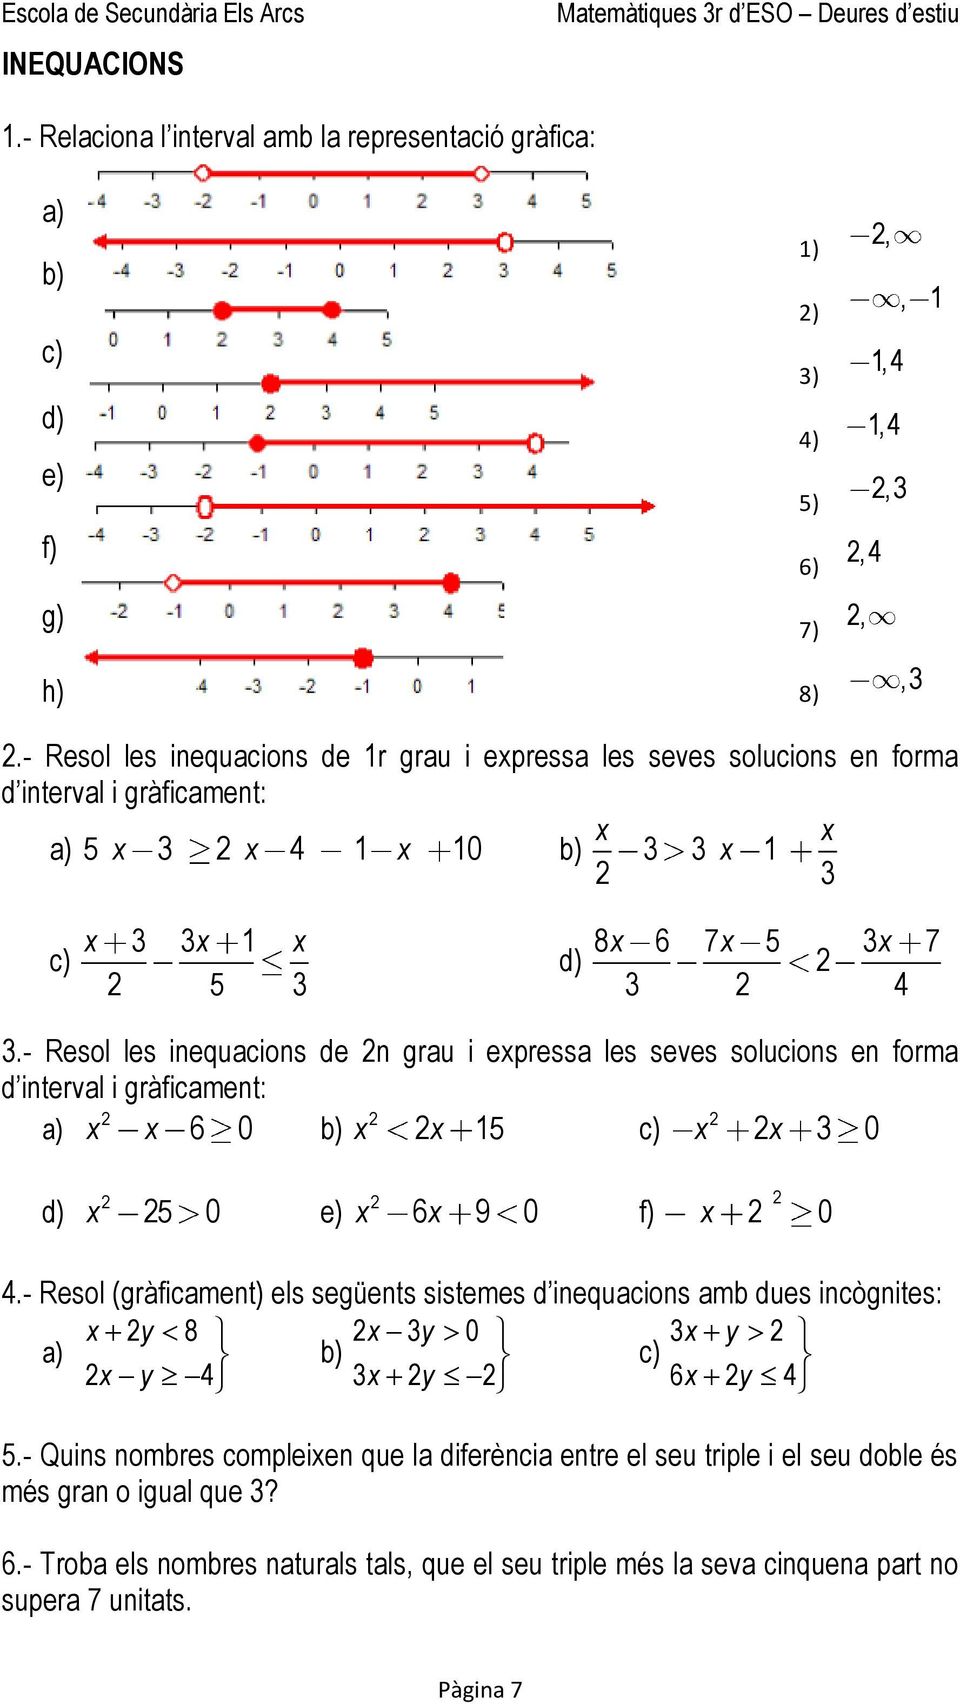 - Resol les inequacions de n grau i epressa les seves solucions en forma d interval i gràficament: 6 0 5 0 5 0 e) 6 9 0 f) 0.